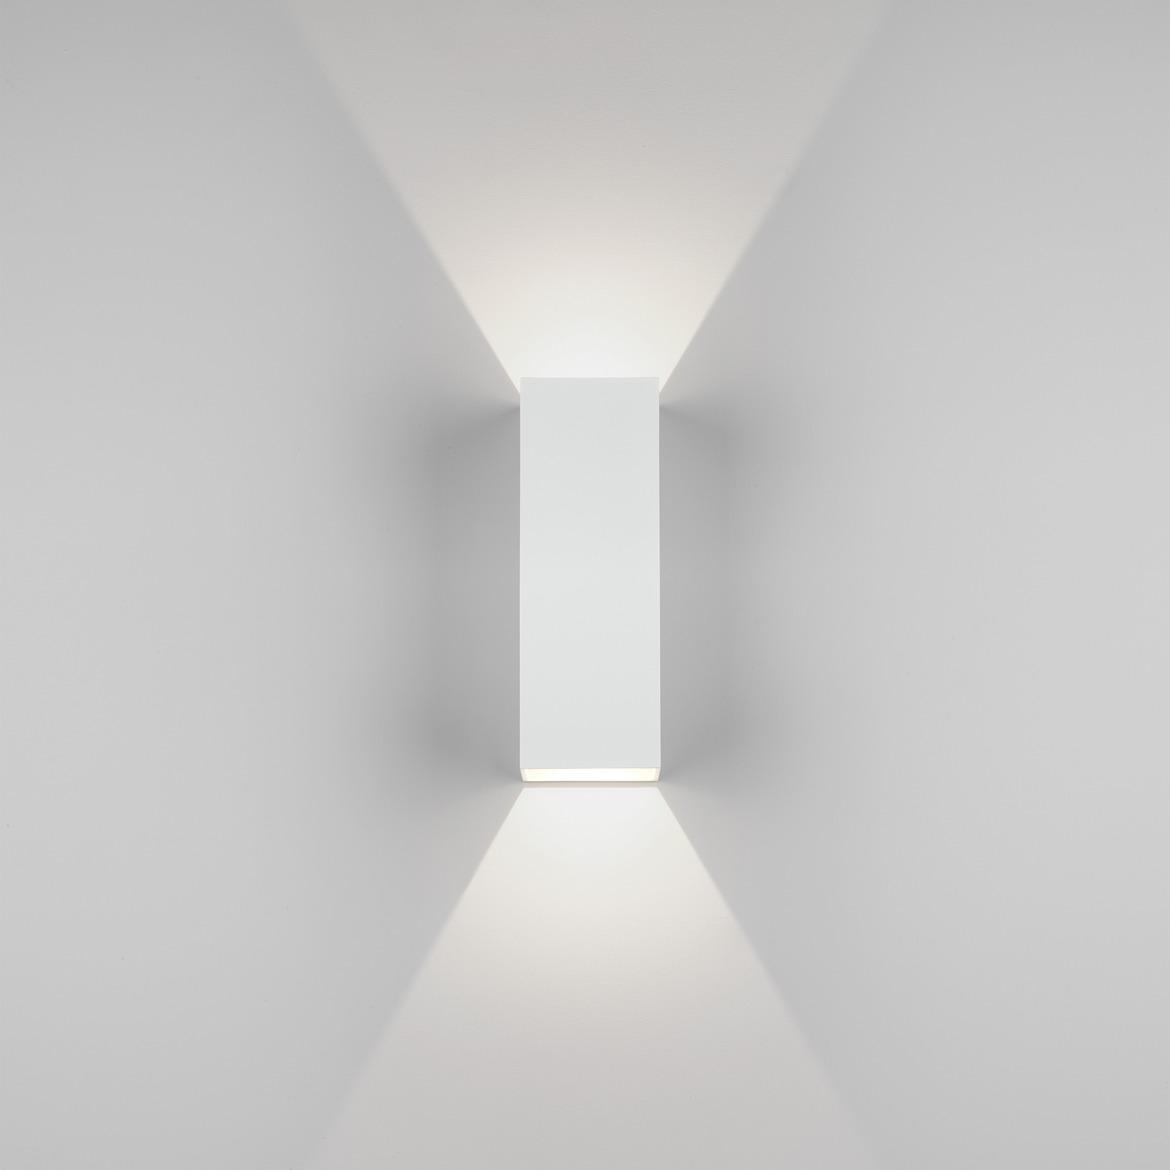 Venkovní nástěnné svítidlo Oslo 255 LED 7.5W 3000K bílá - ASTRO